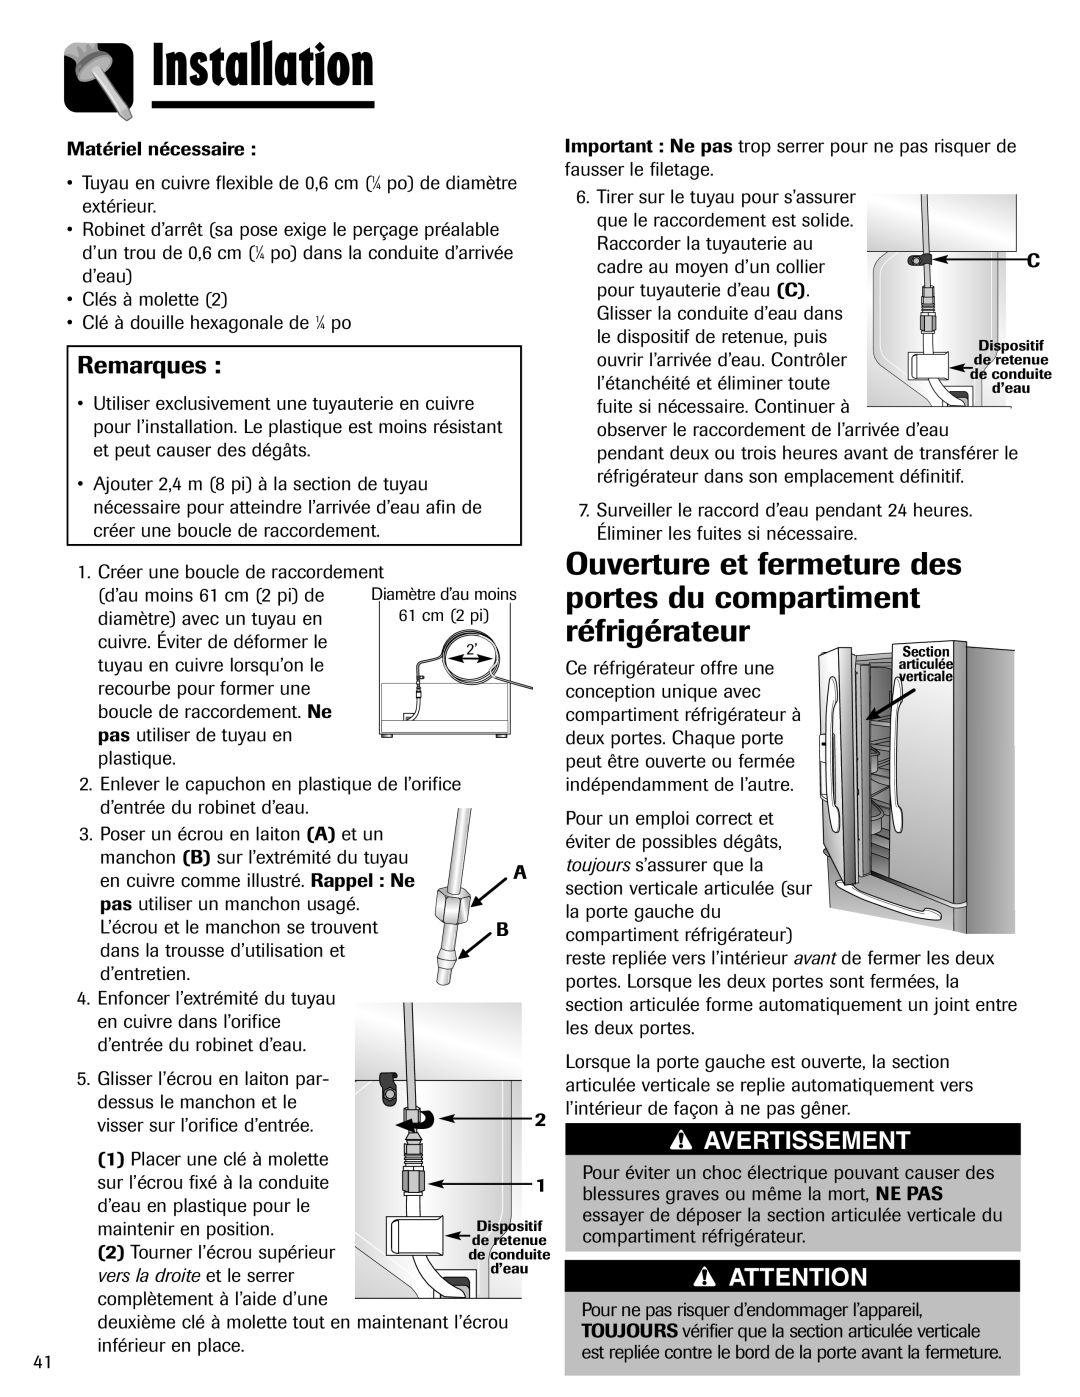 Maytag MFI2266AEW Ouverture et fermeture des portes du compartiment réfrigérateur, Installation, Remarques, Avertissement 